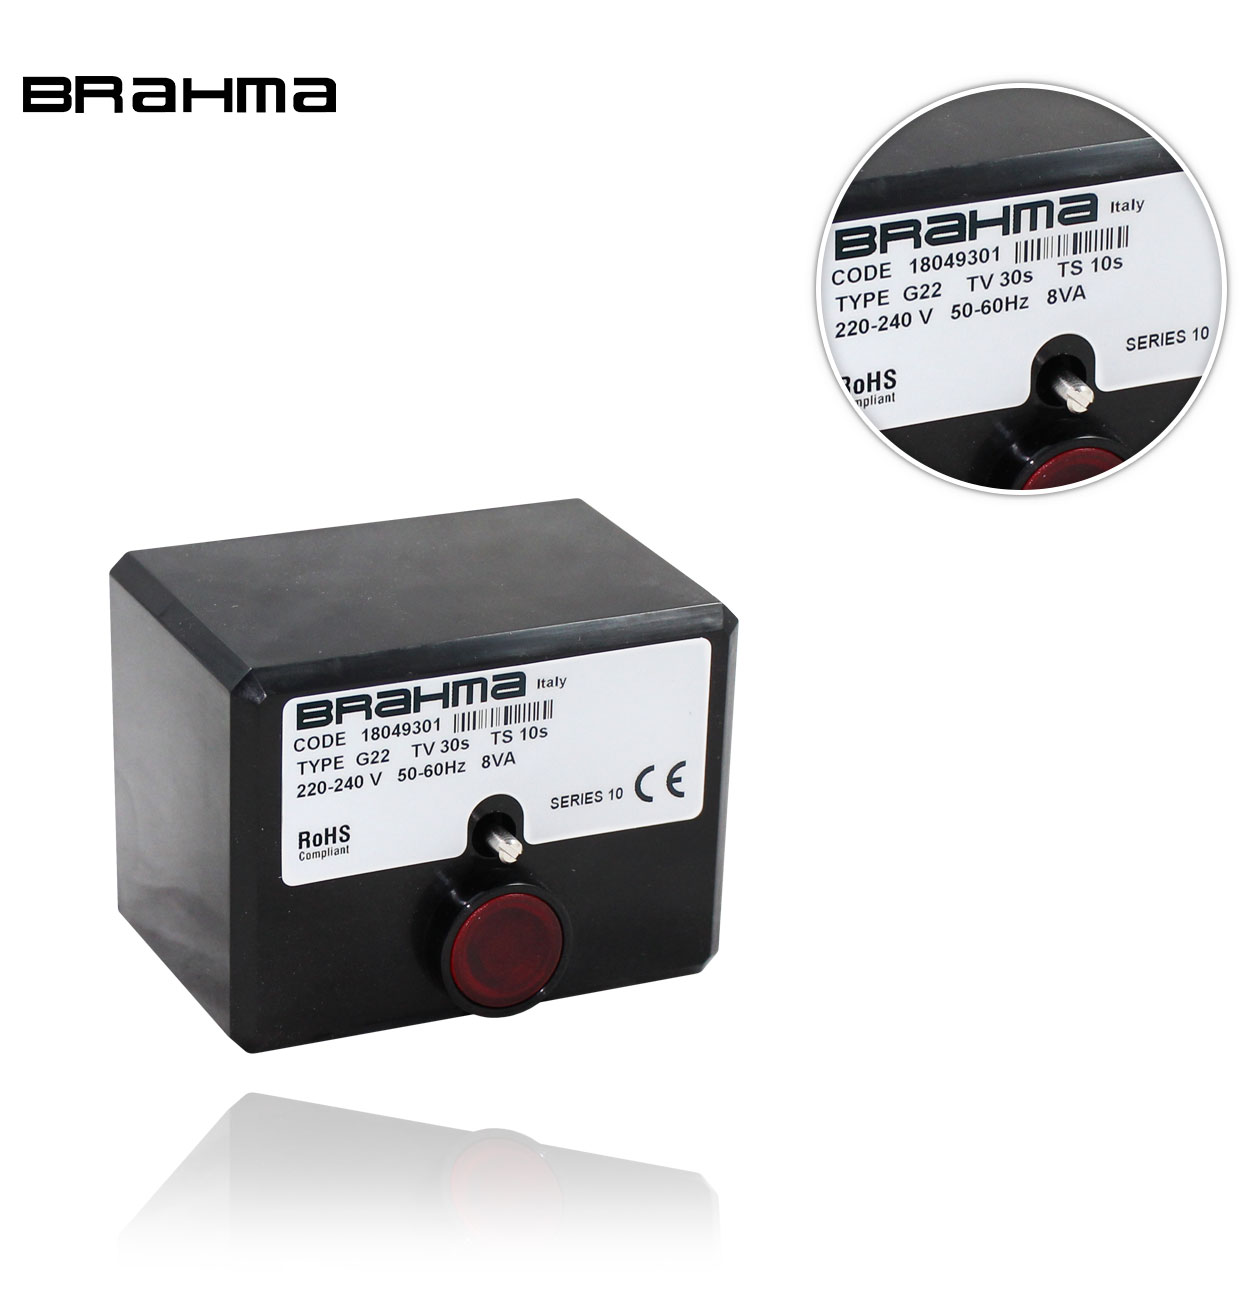 G 22/09 TW30 TS10 BRAHMA CONTROL BOX